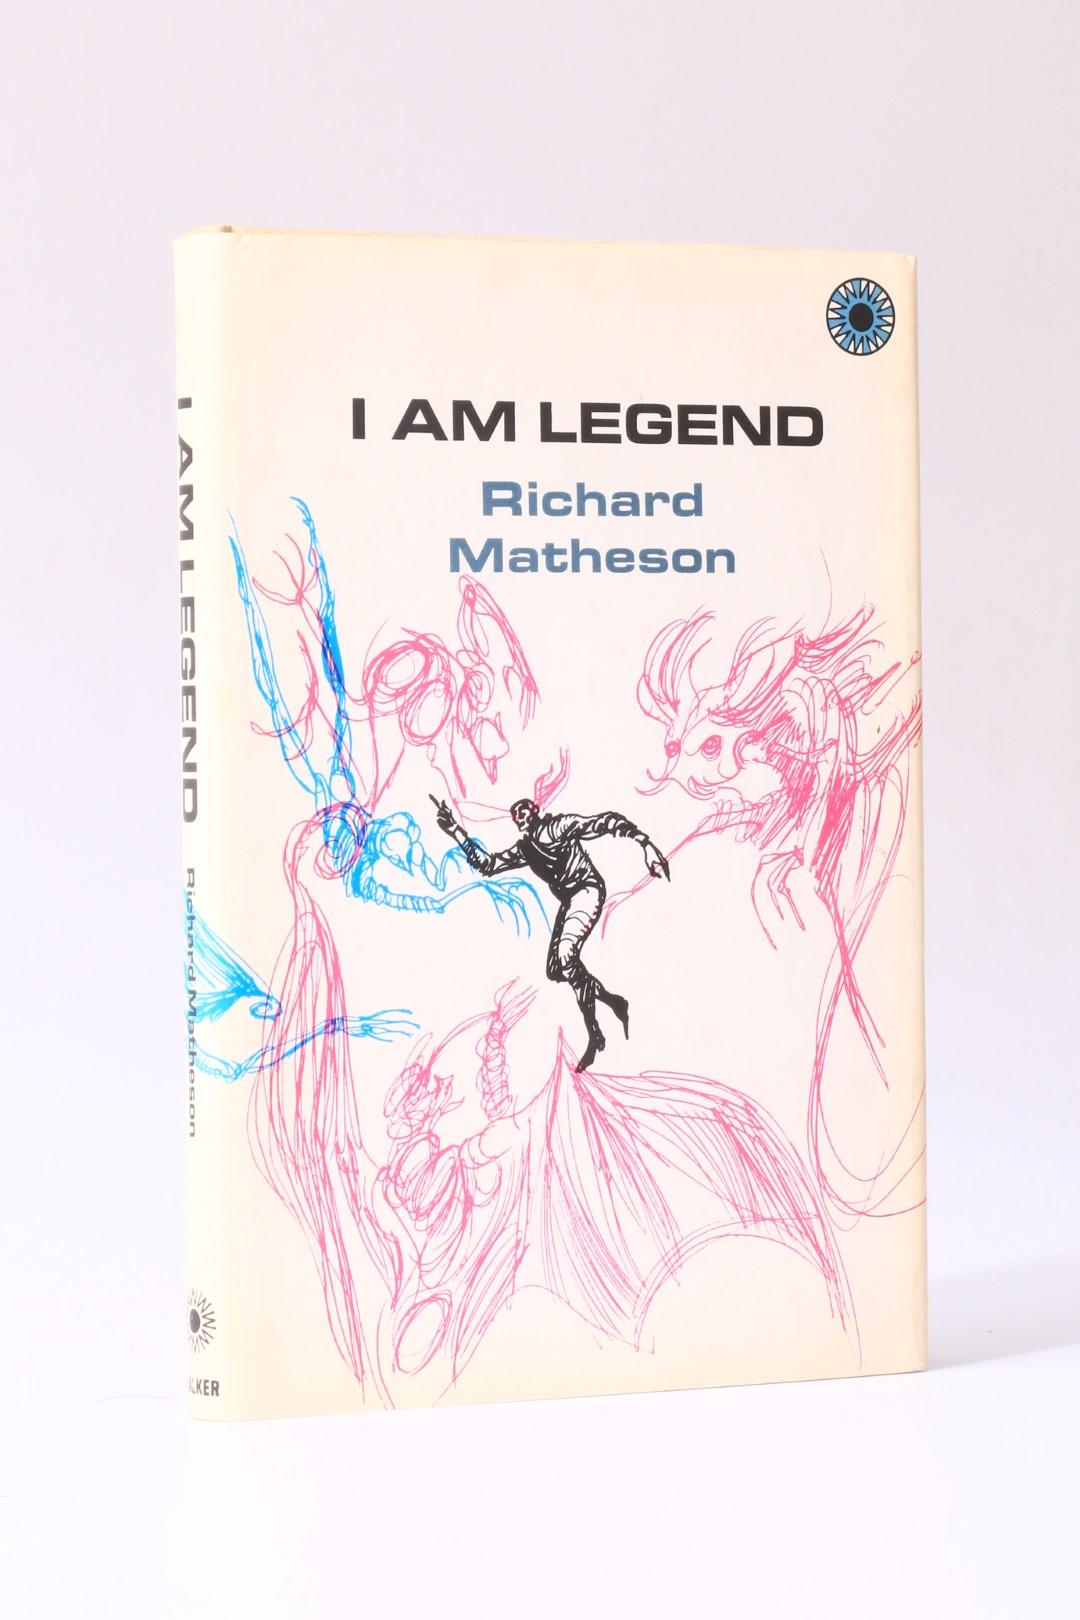 Richard Matheson - I am Legend - Walker Books, 1970, First Edition.